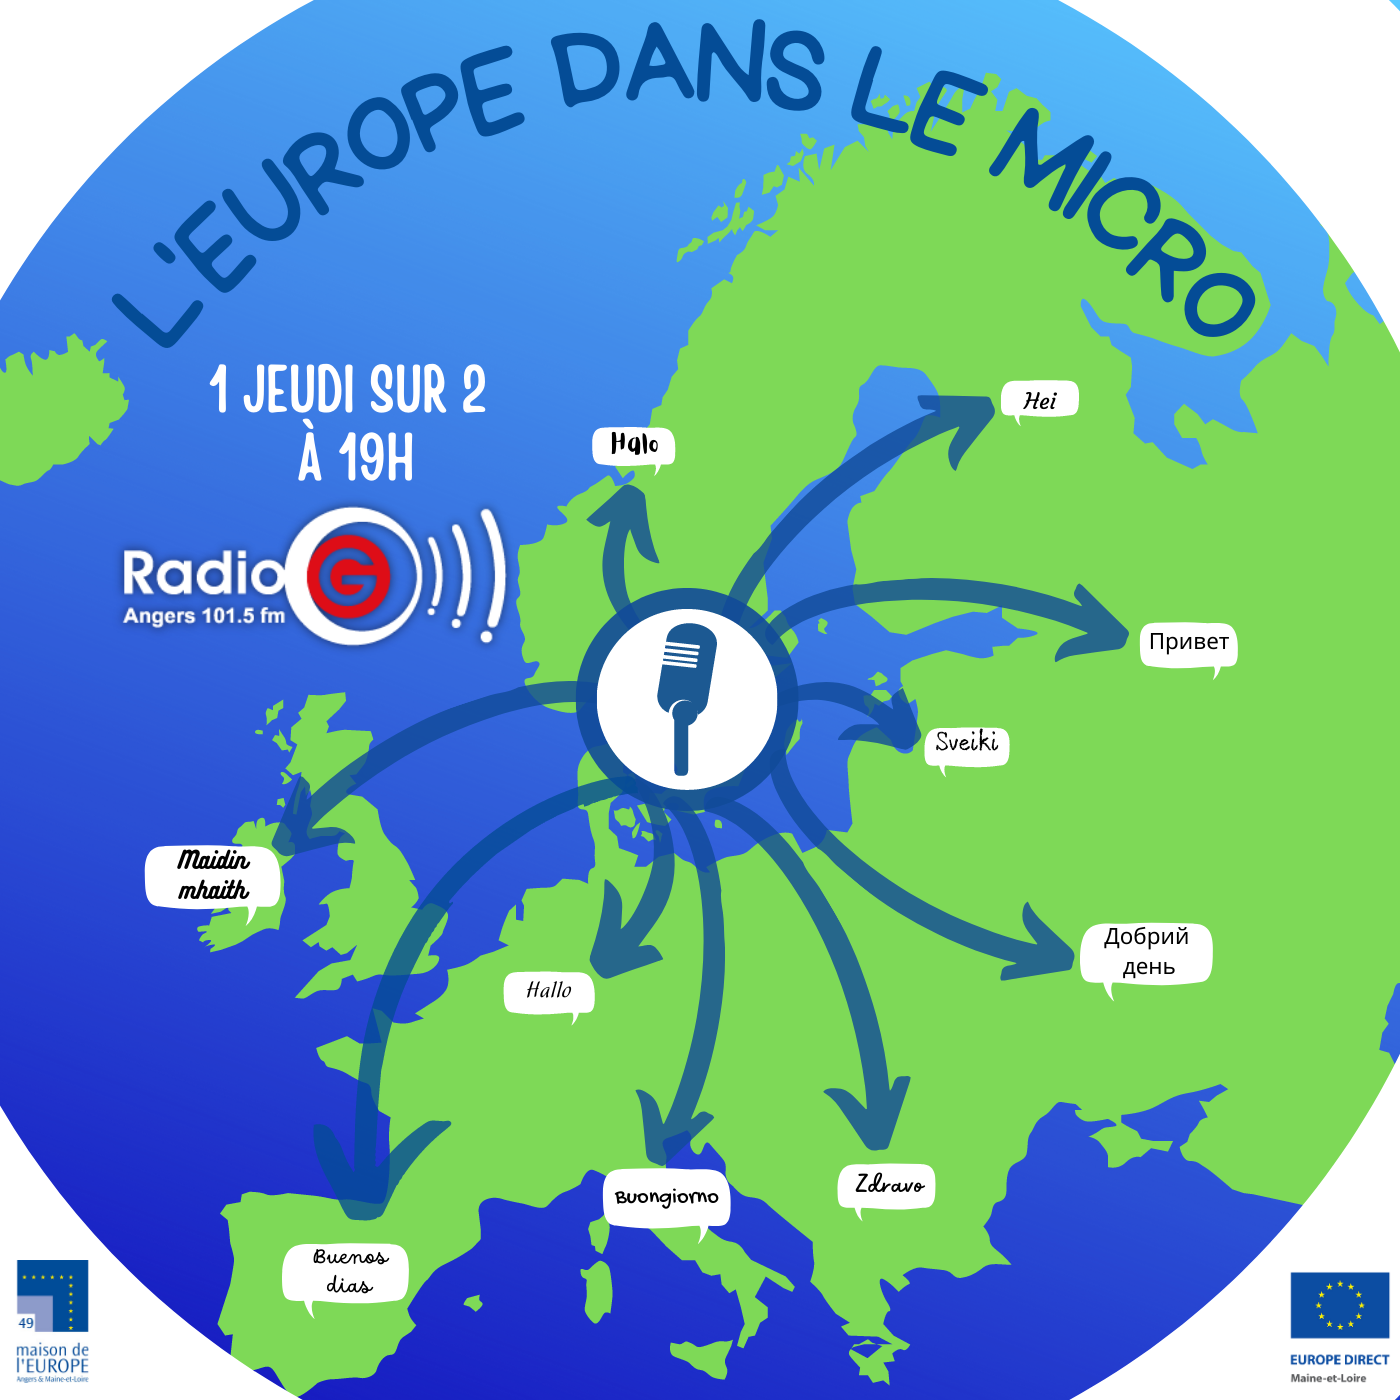 L'Europe dans le micro du 23 09 2021 Magazine radio sur l'europe L'Europe dans le micro du 23 09 2021